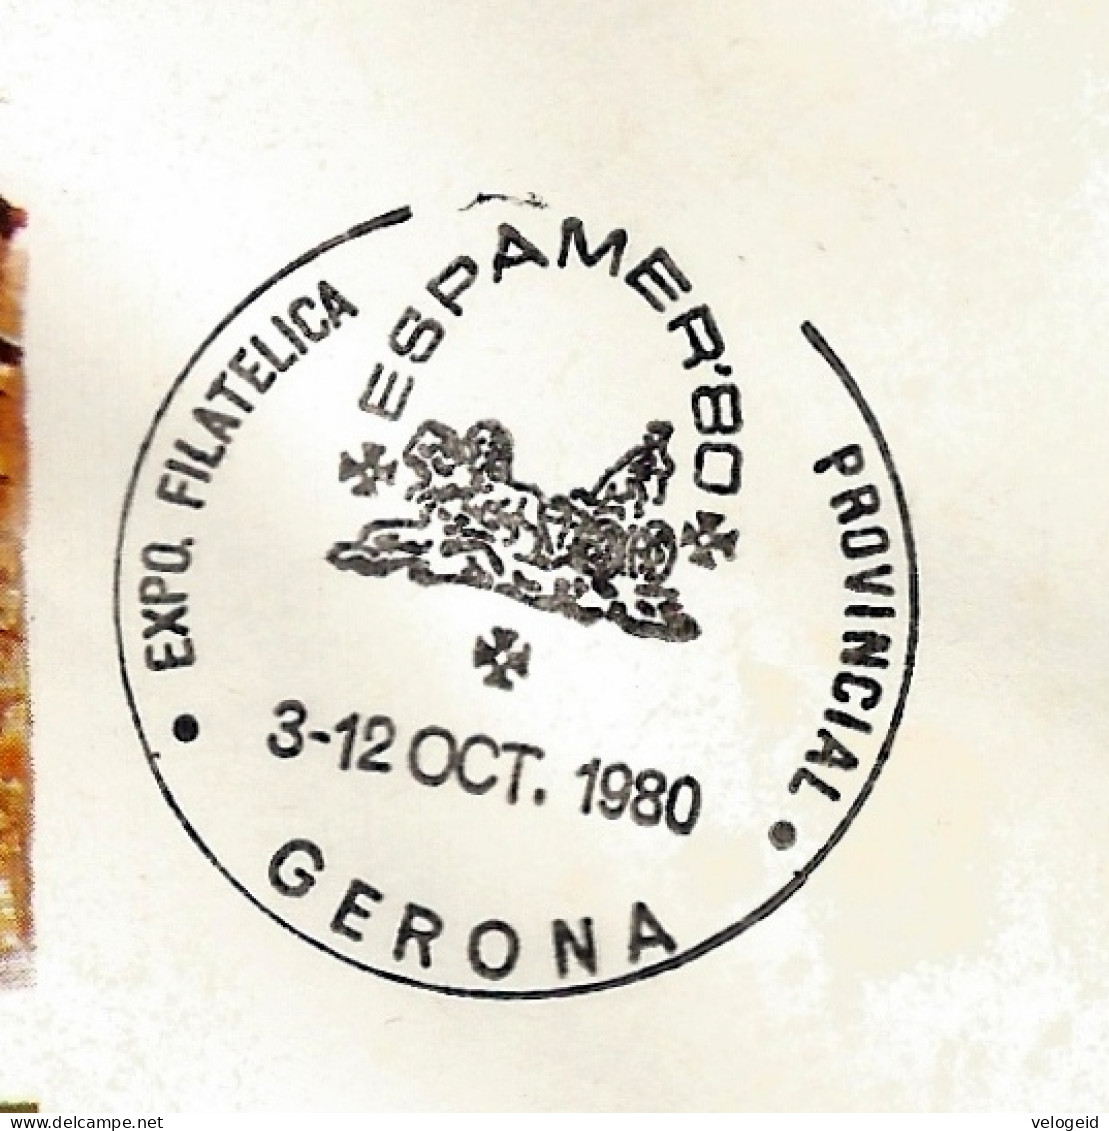 España. Spain. 1980. Matasello Especial. Special Postmark. ESPAMER '80. Gerona - Máquinas Franqueo (EMA)